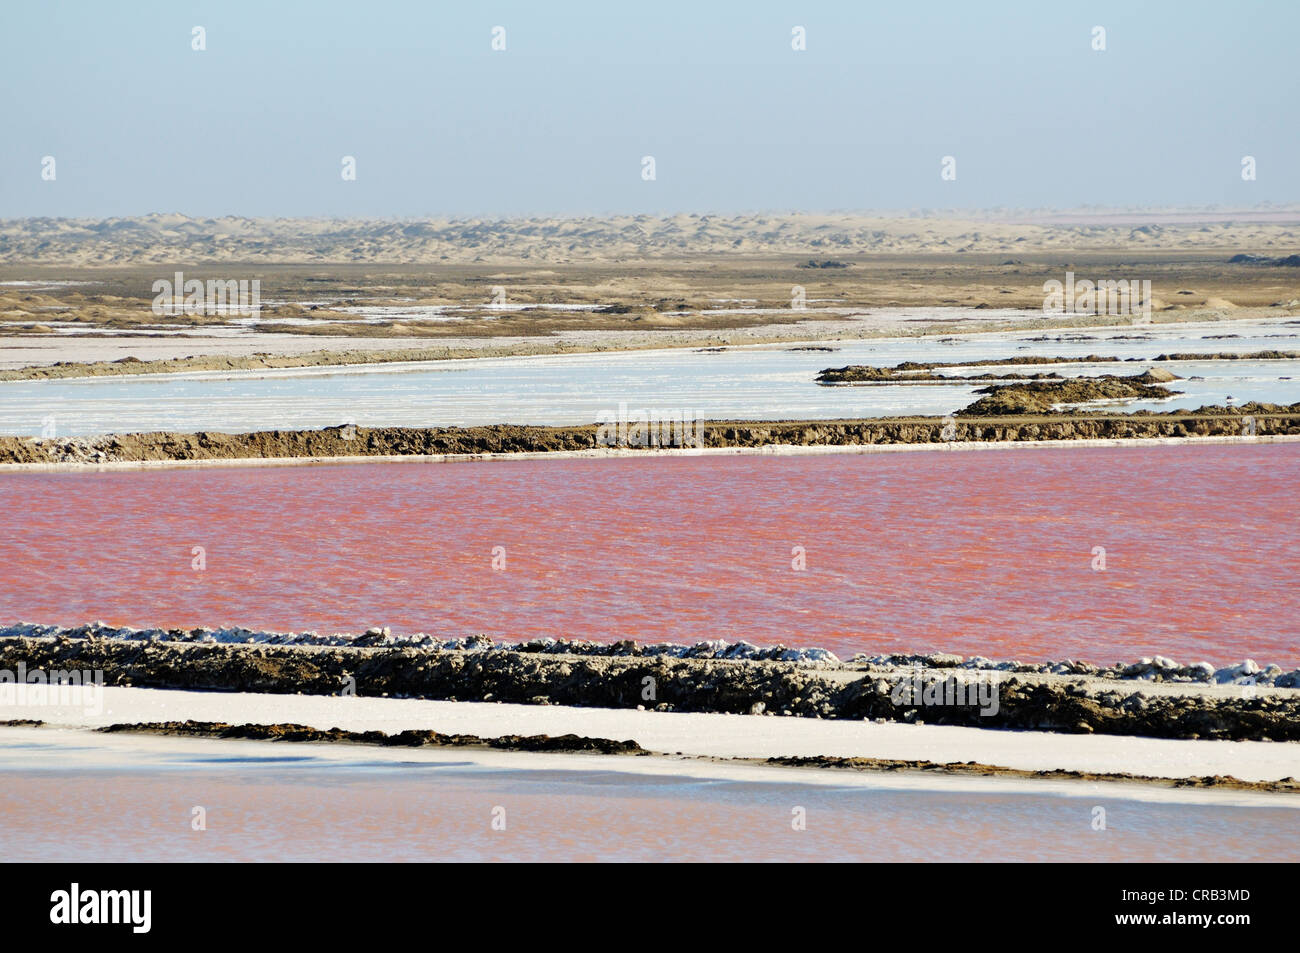 Les bassins d'eau utilisée pour la production de sel dans un marais salant dans le Parc National, partie de la Namibian Skeleton Coast National Park Banque D'Images